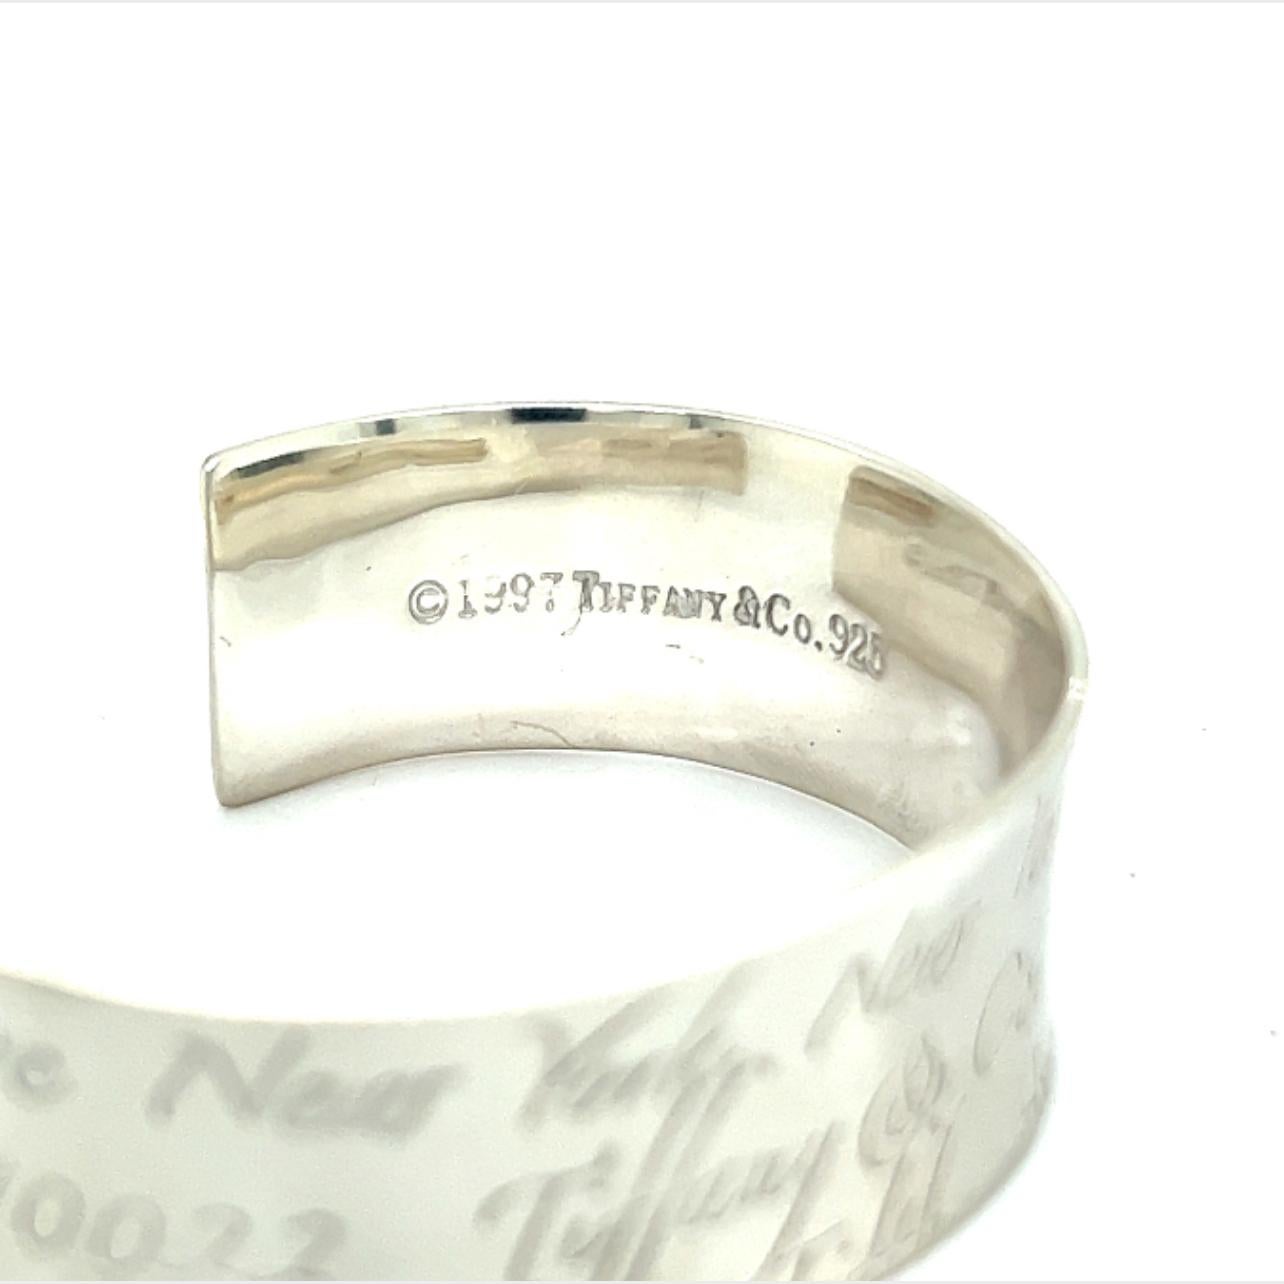 tiffany silver cuff bracelet 1997